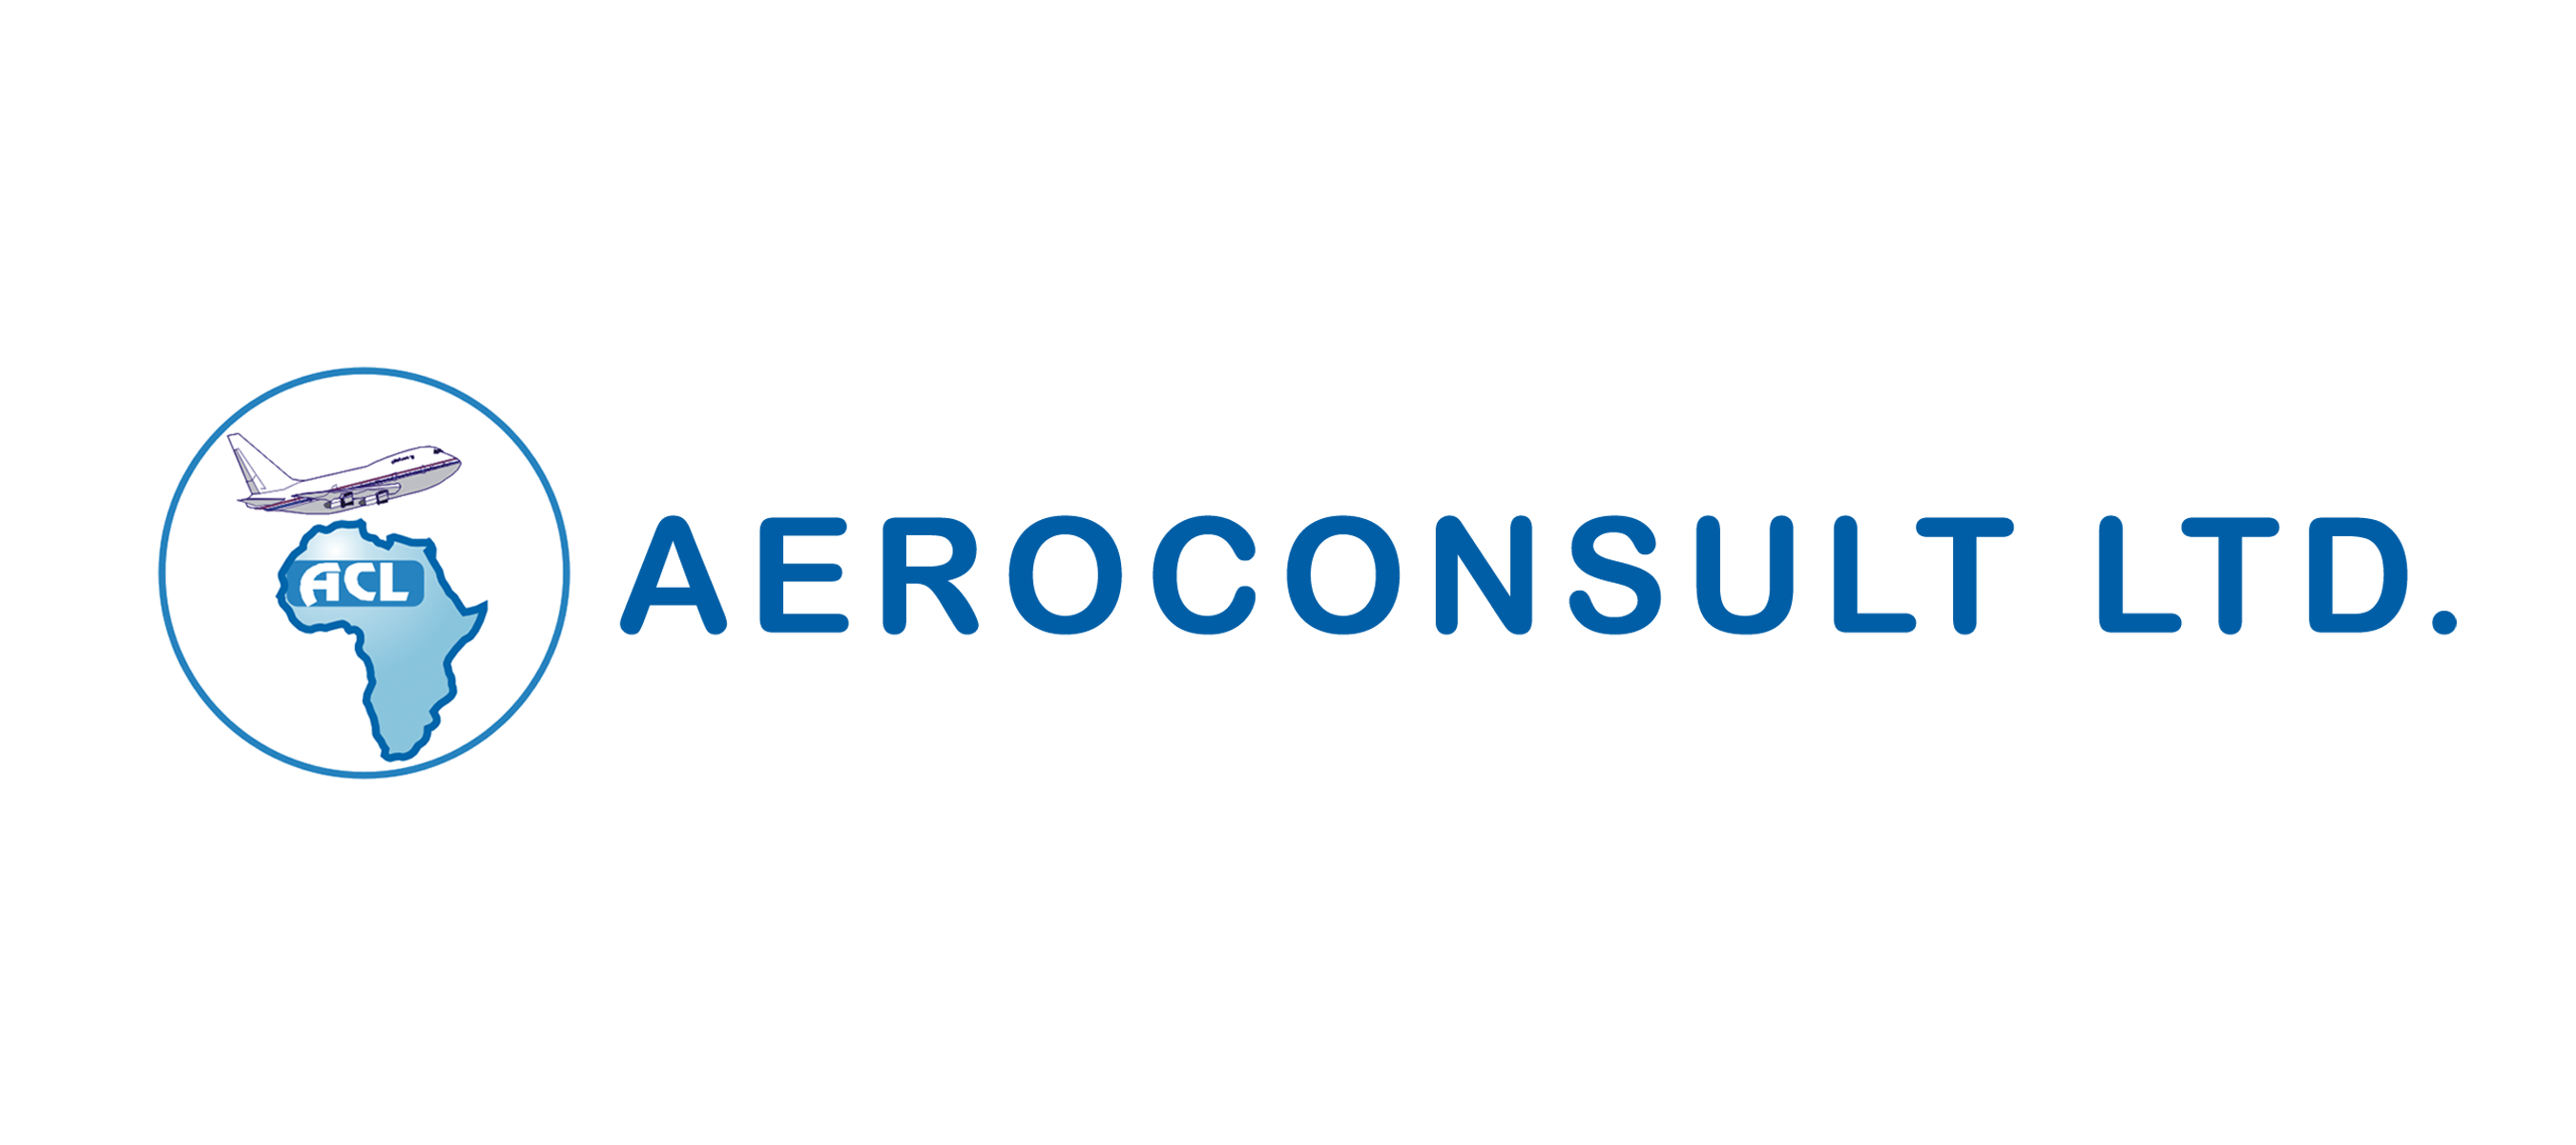 Aeroconsult Ltd.